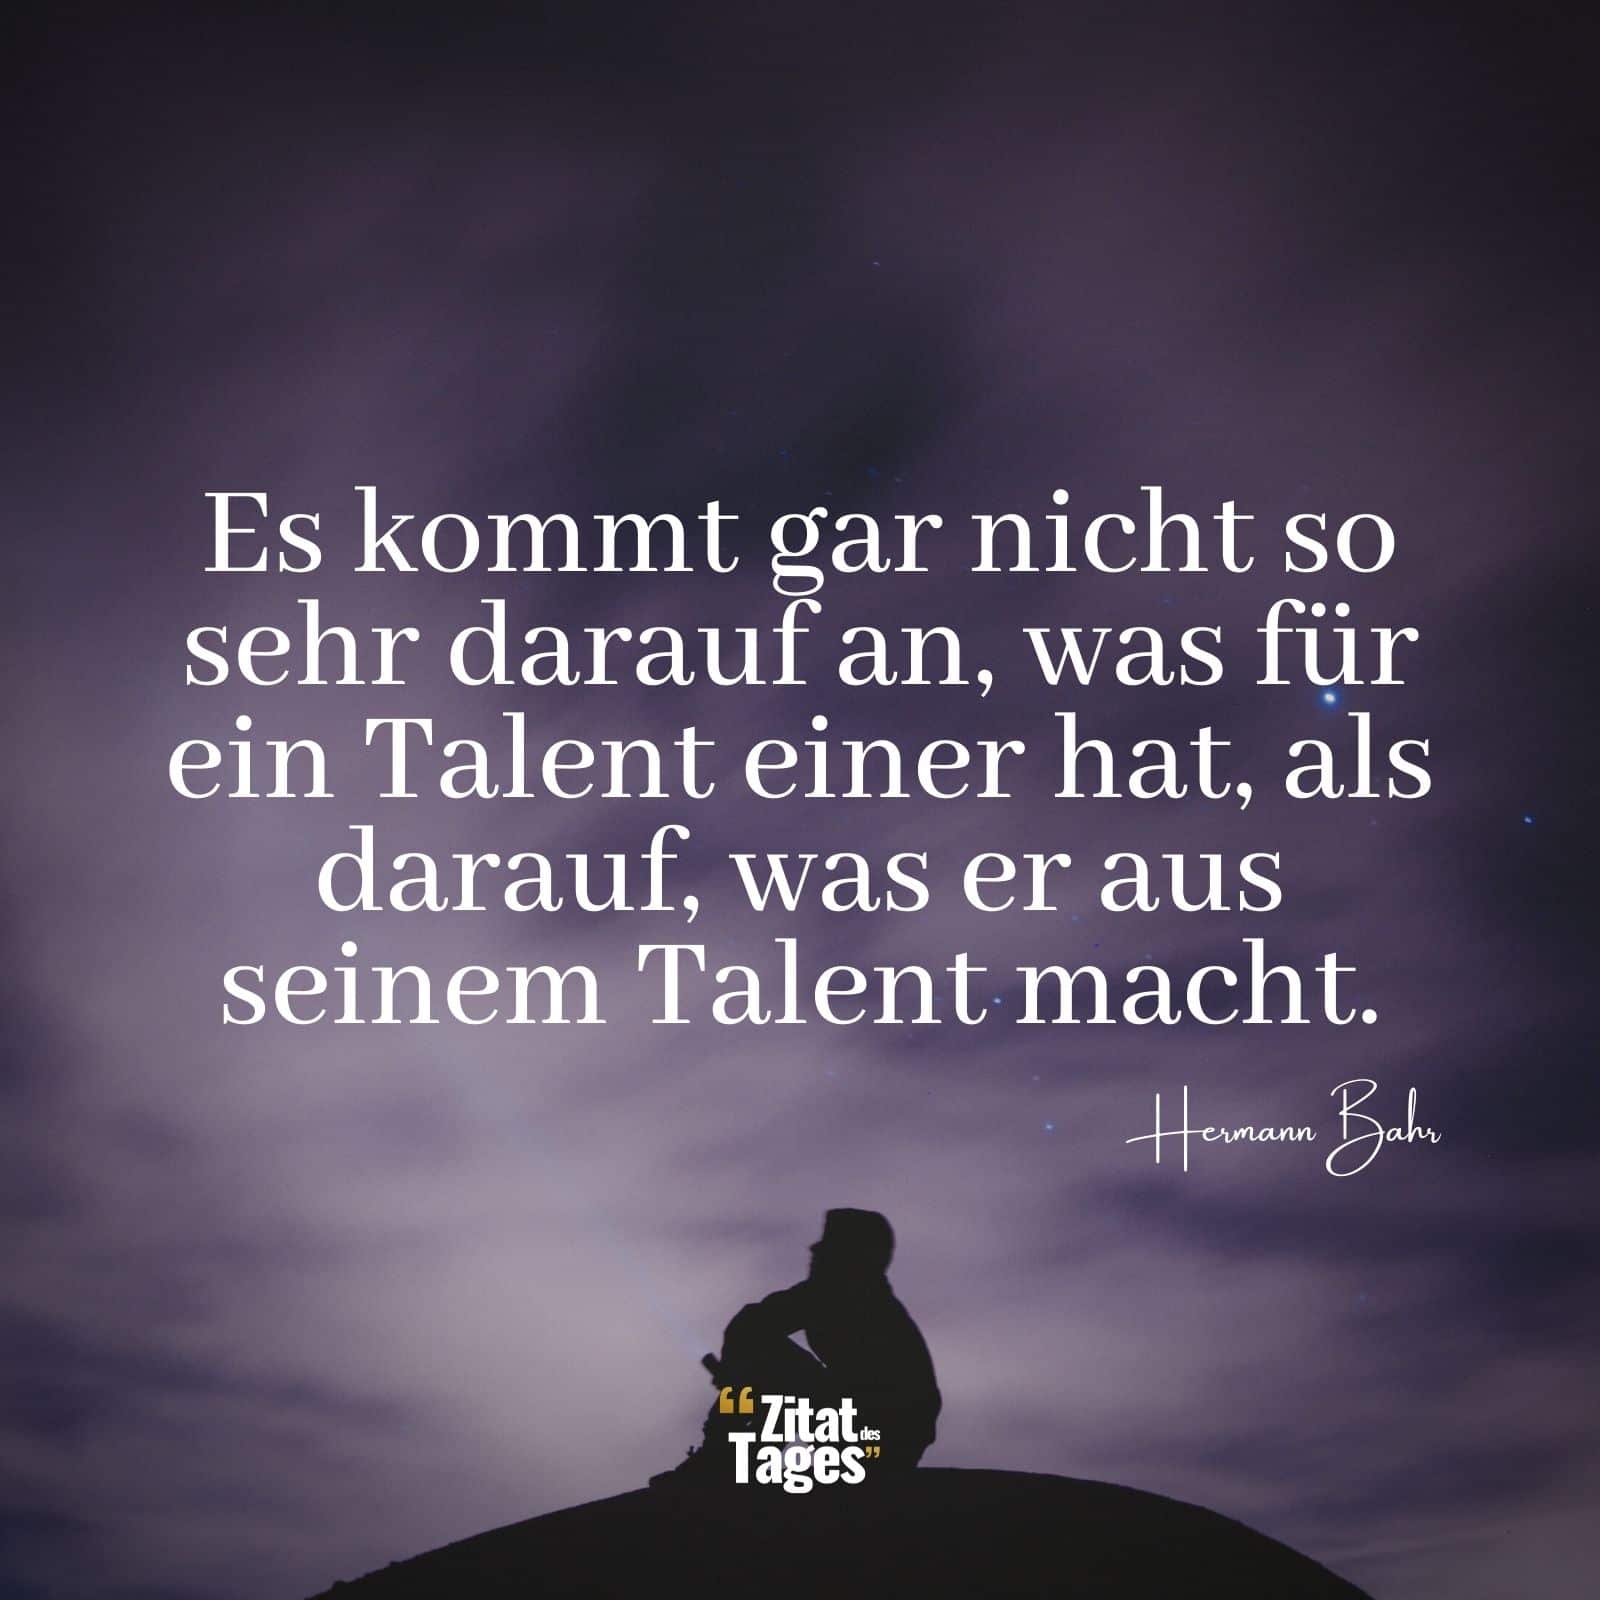 Es kommt gar nicht so sehr darauf an, was für ein Talent einer hat, als darauf, was er aus seinem Talent macht. - Hermann Bahr